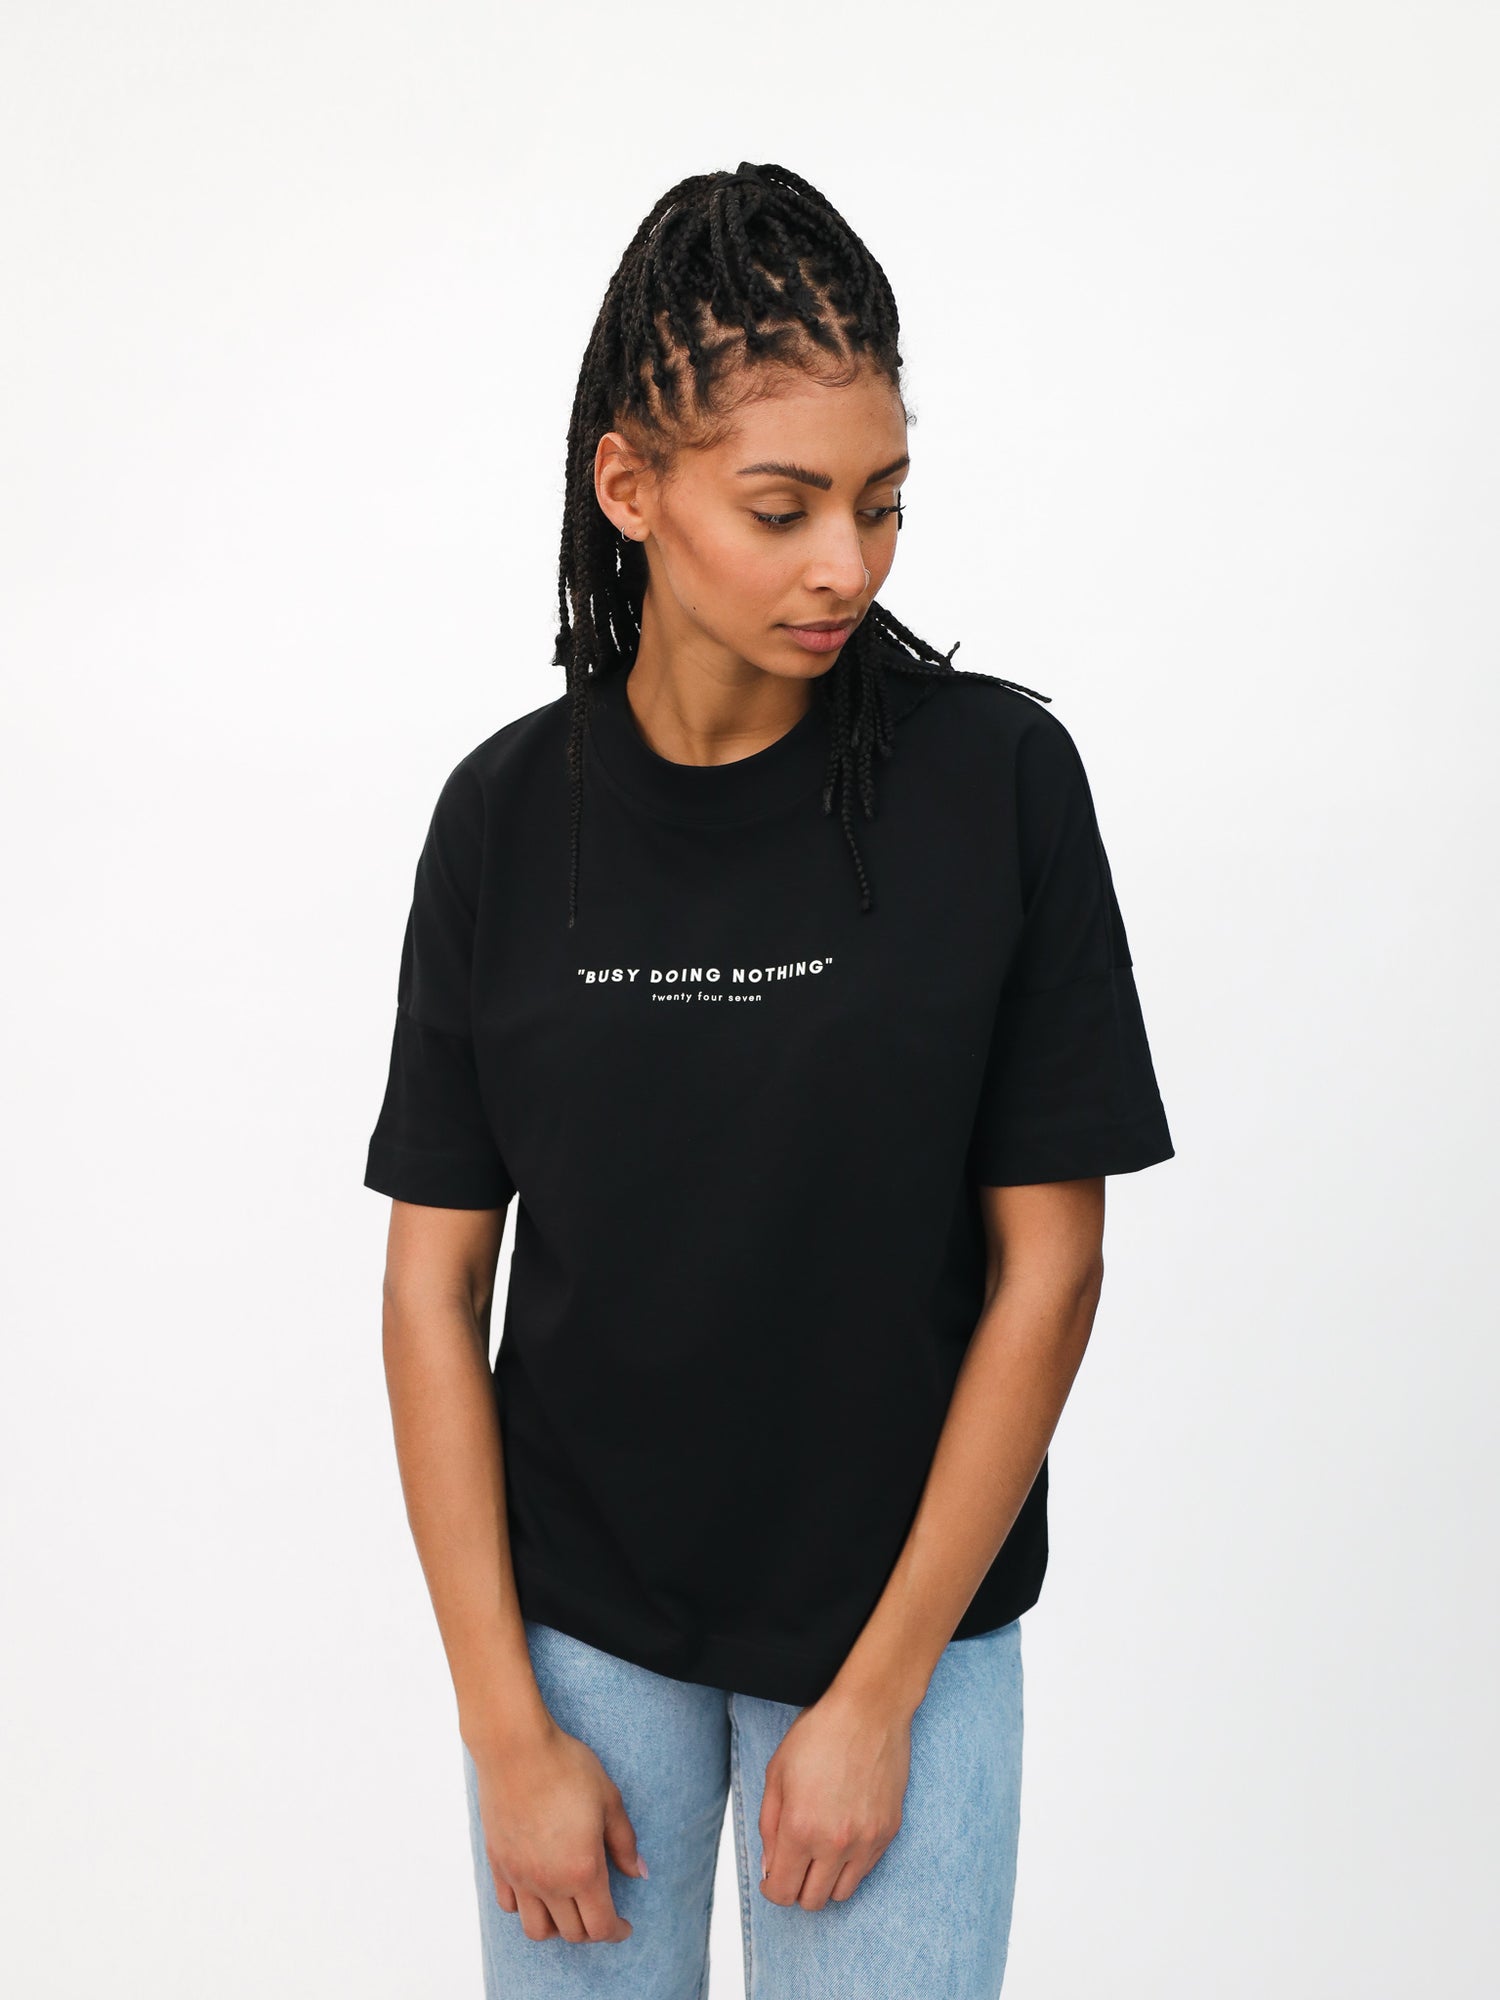 BUSY - Damen T-Shirt schwarz - FAMVIBES 